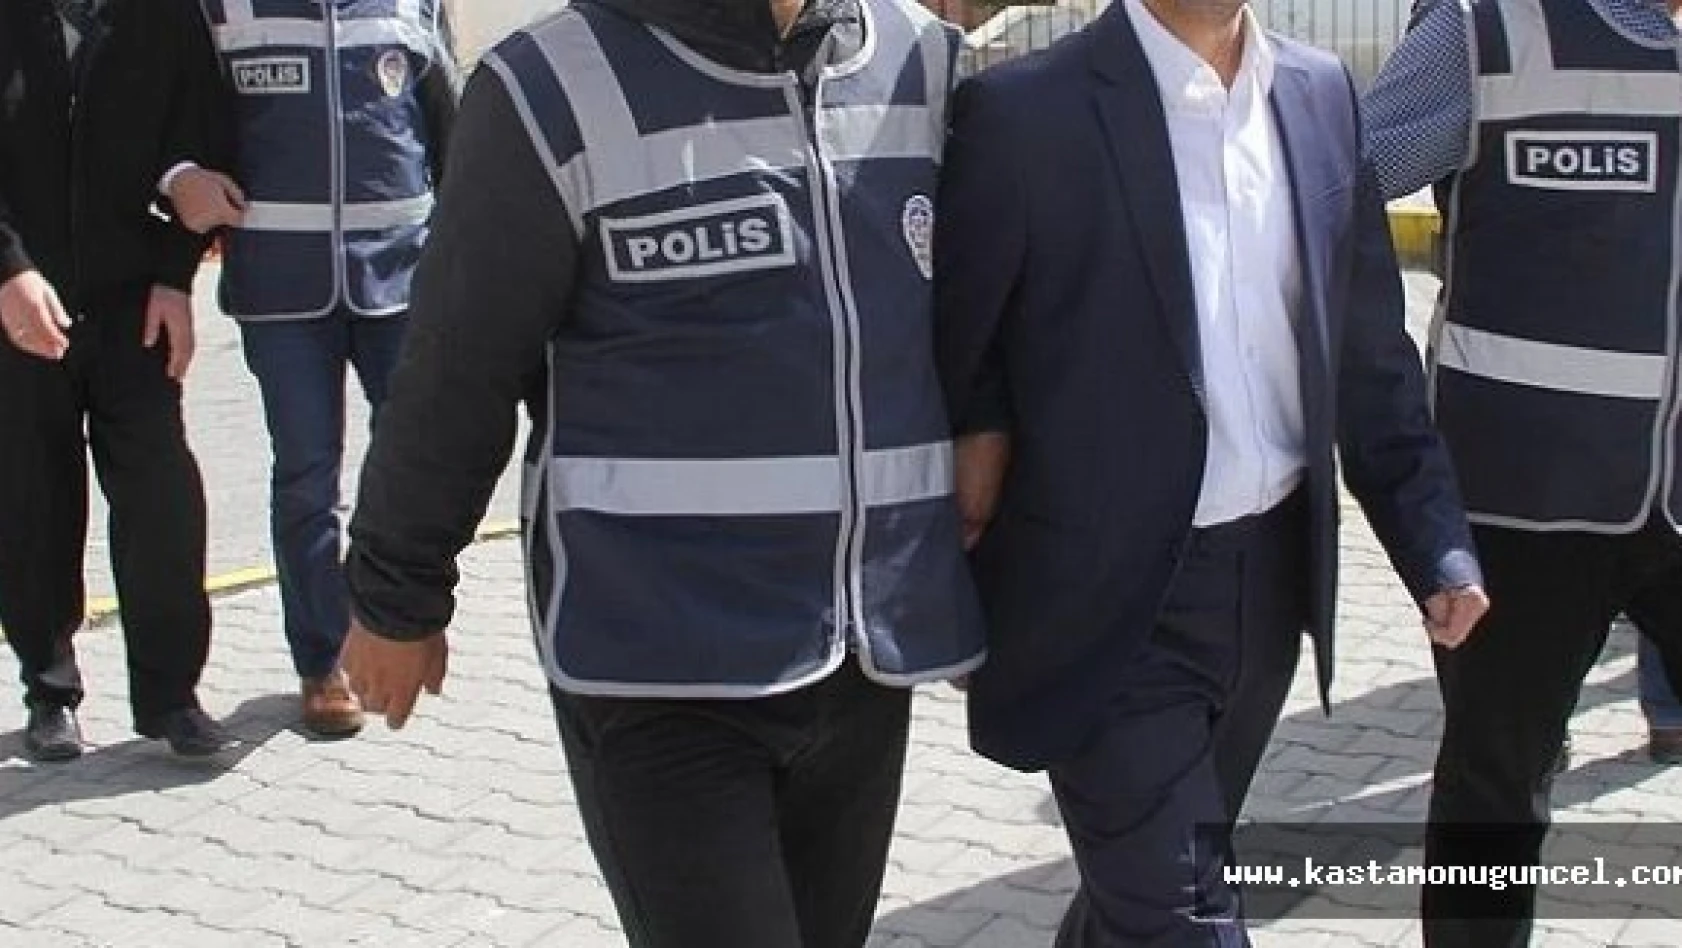 Kastamonu'da FETÖ'den 4 kişi tutuklandı